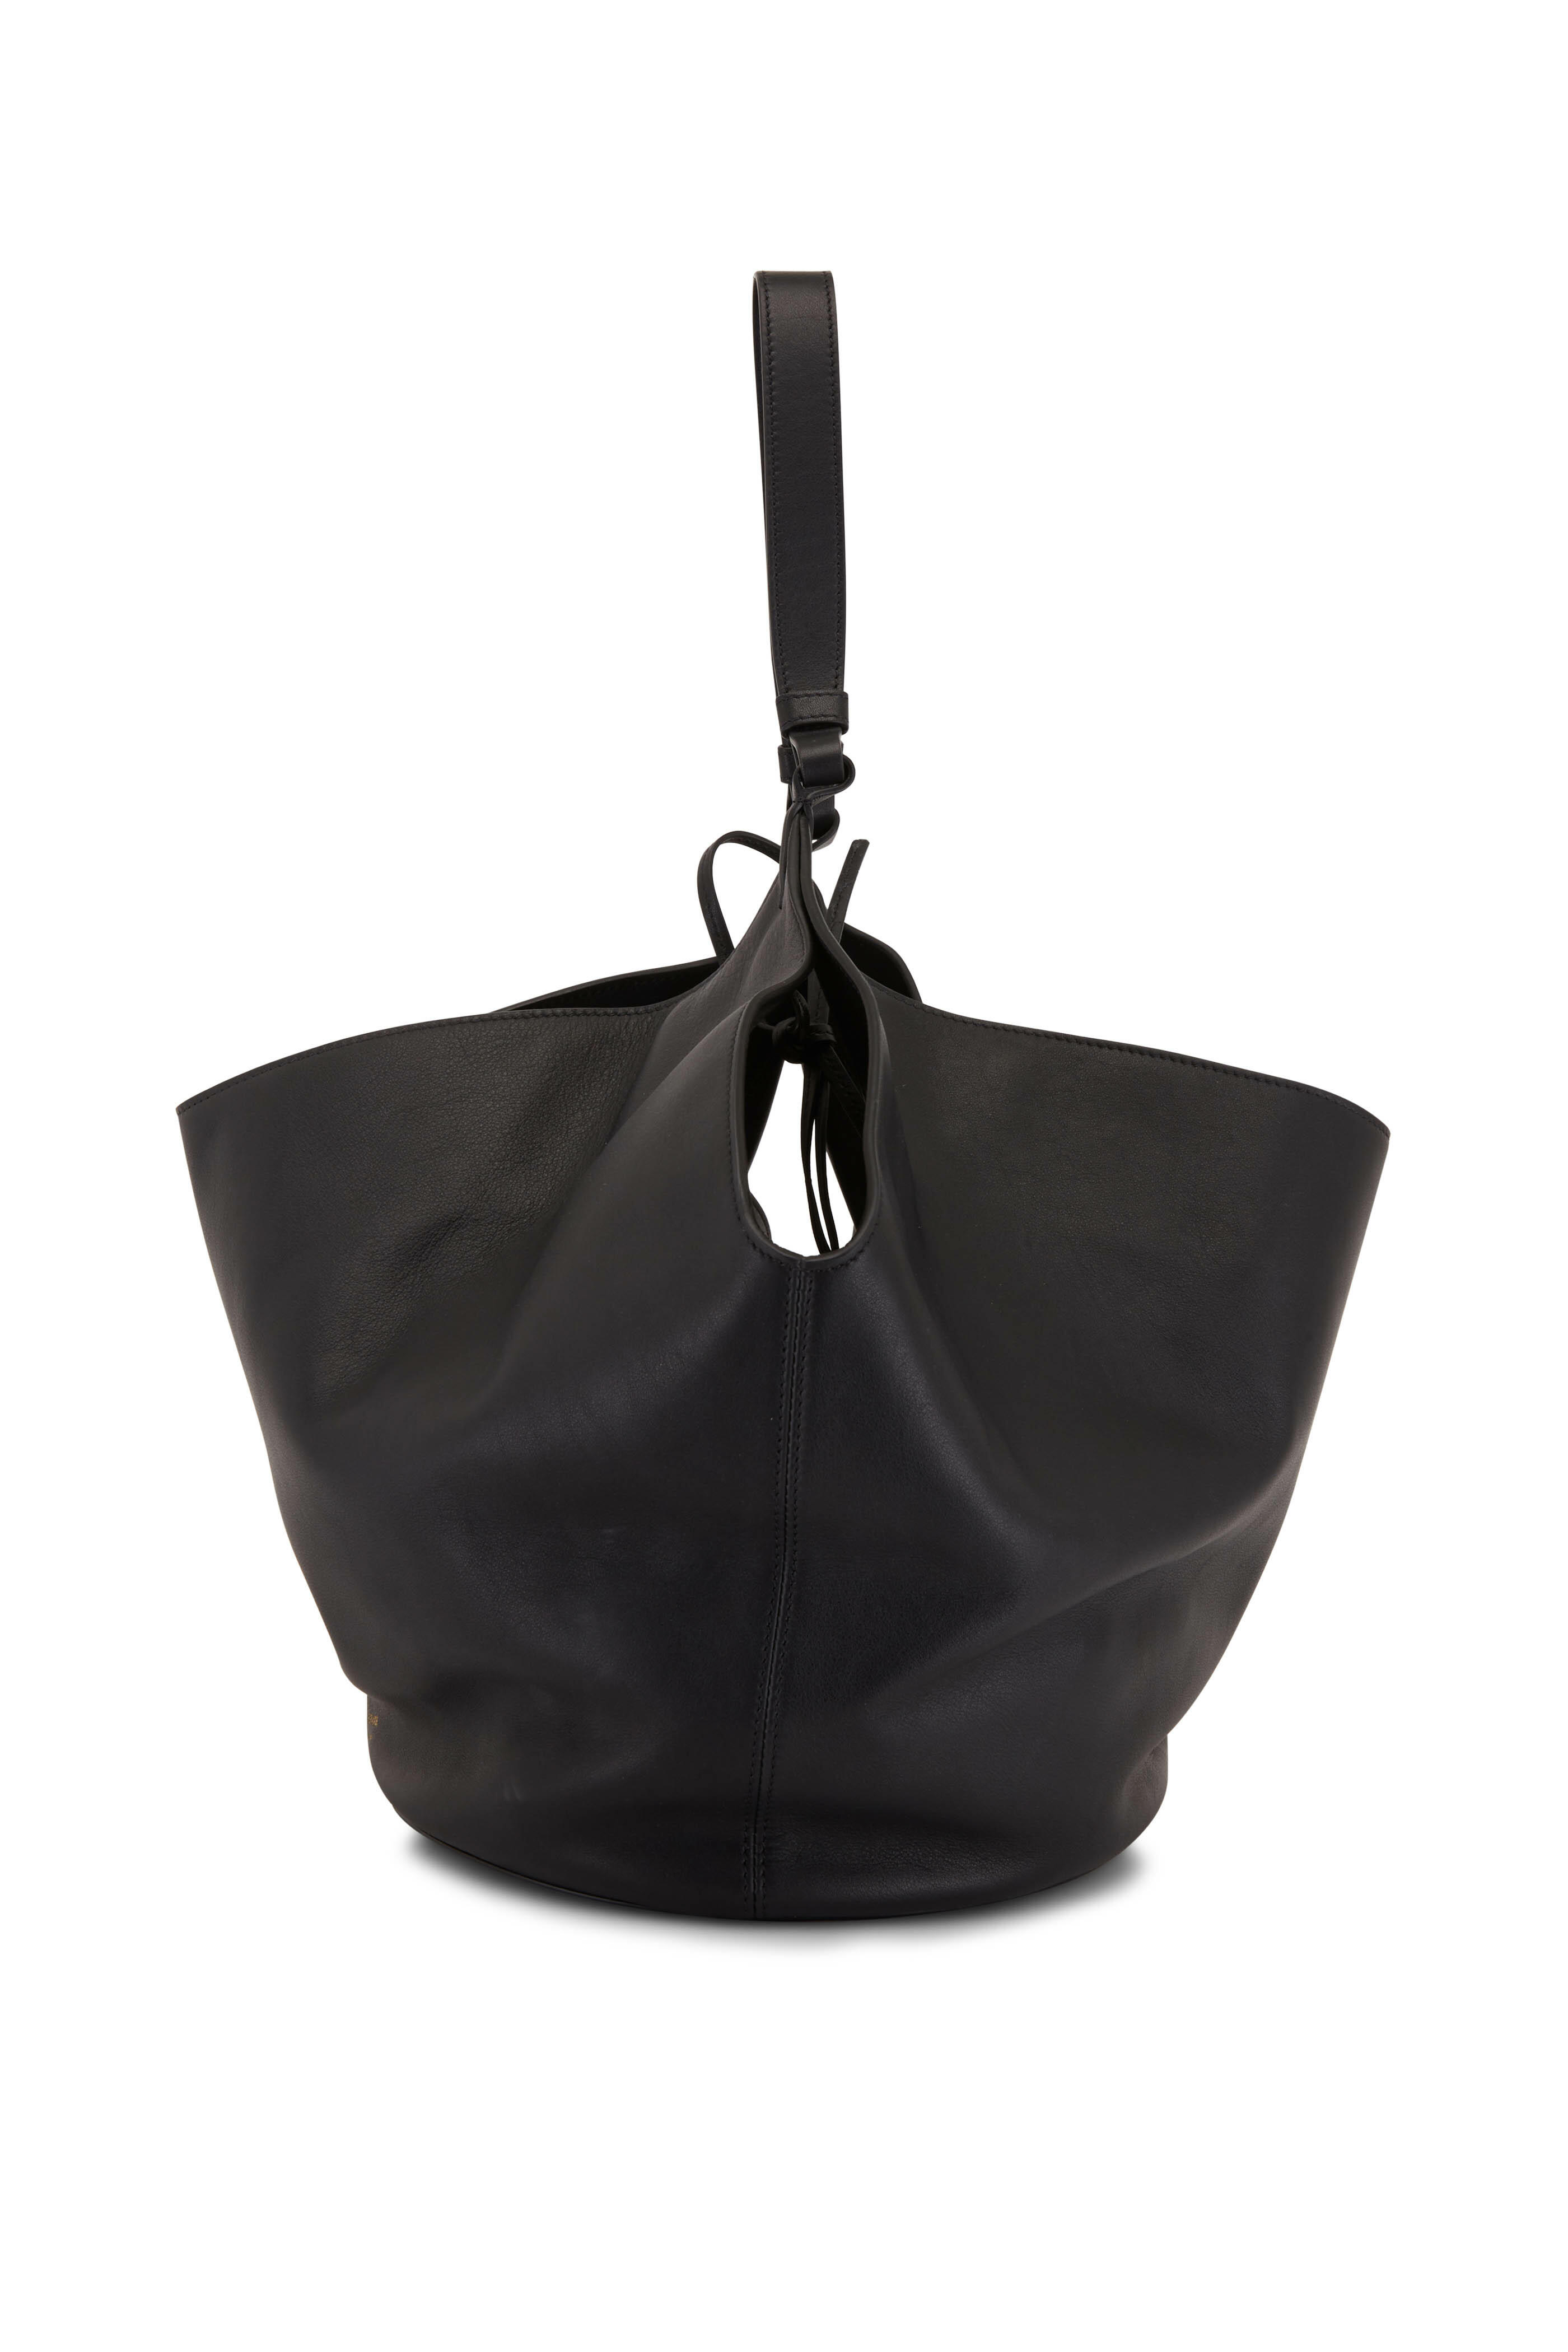 Lotus Bag | Black